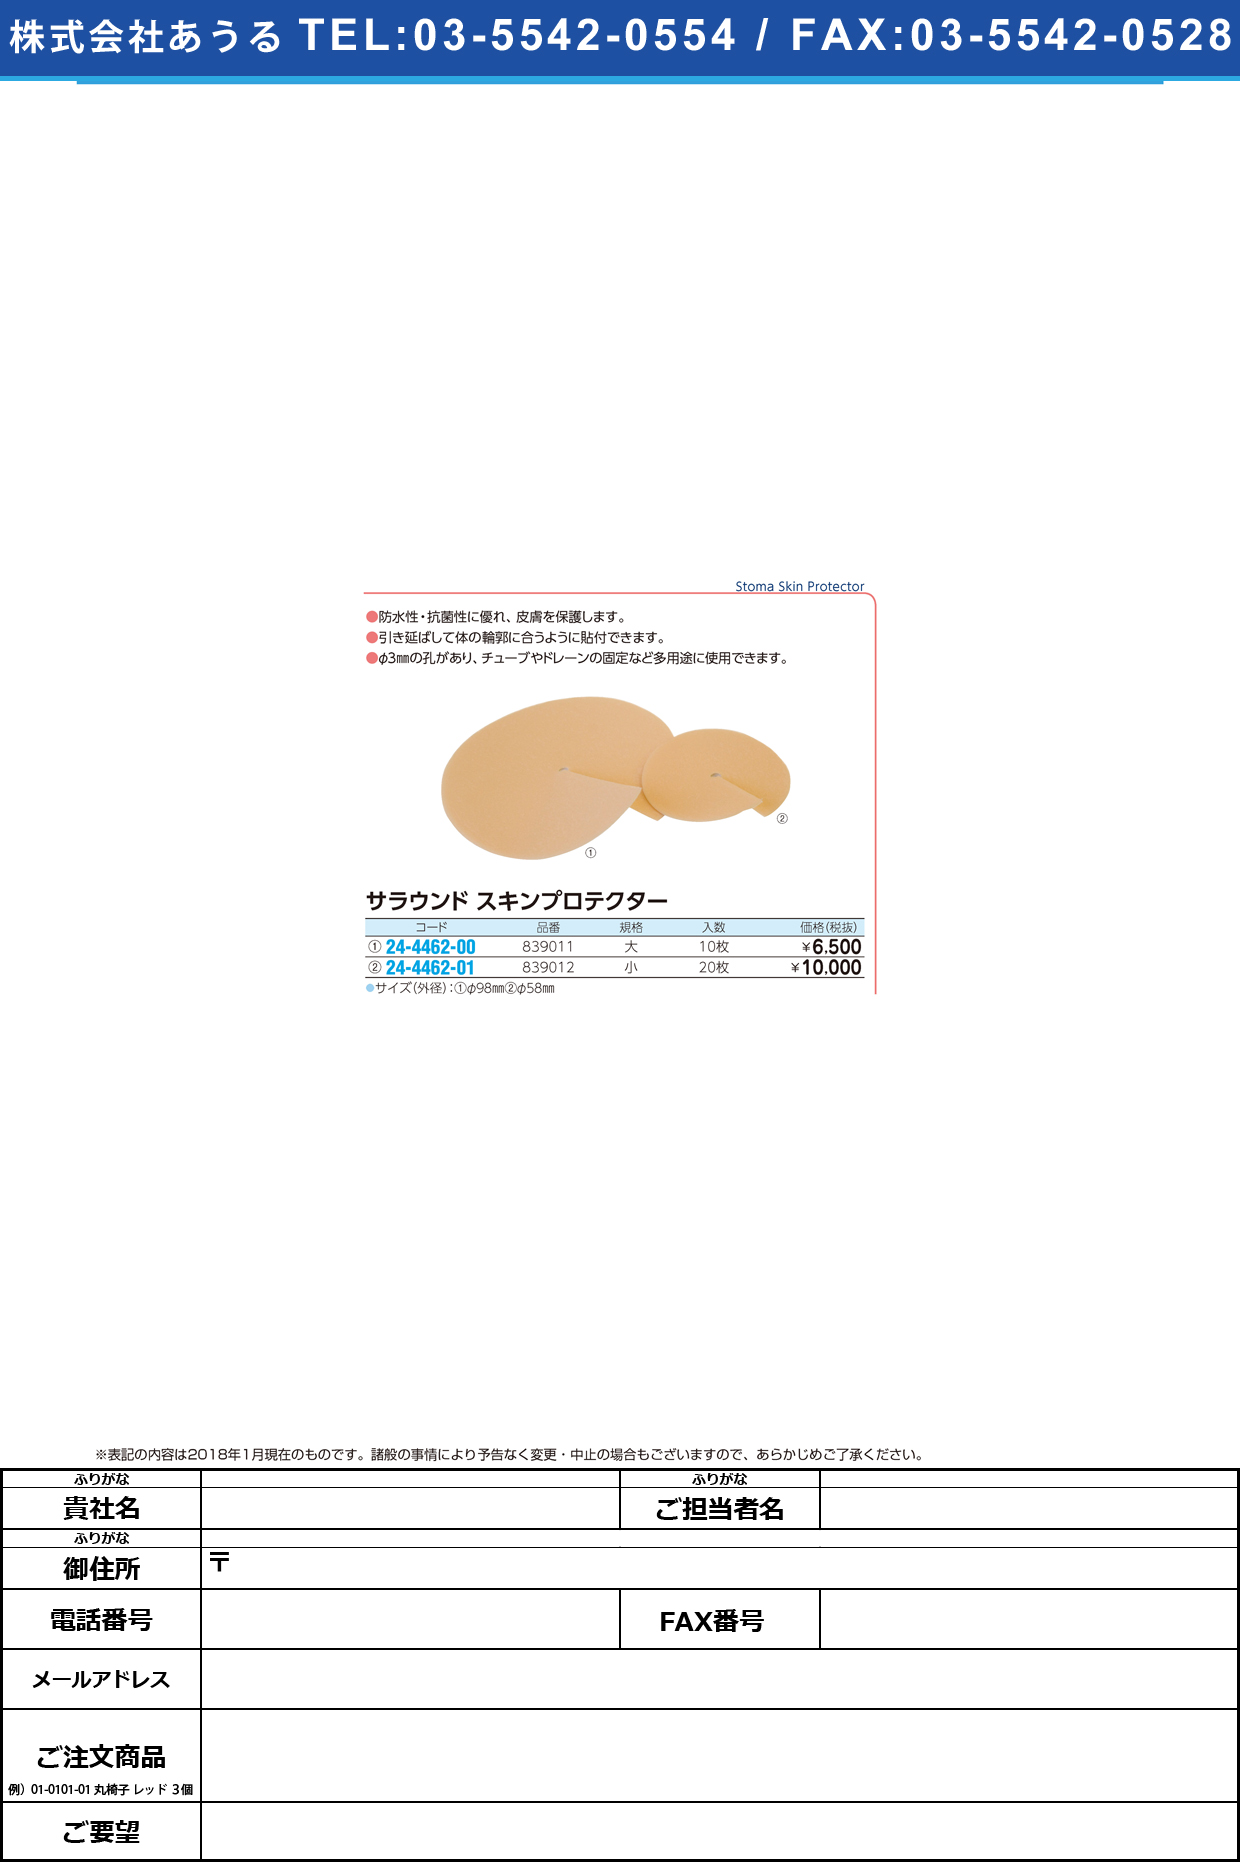 (24-4462-00)サラウンドスキンプロテクター 839011(ﾀﾞｲ)10ﾏｲ ｻﾗｳﾝﾄﾞｽｷﾝﾌﾟﾛﾃｸﾀｰ【1箱単位】【2019年カタログ商品】